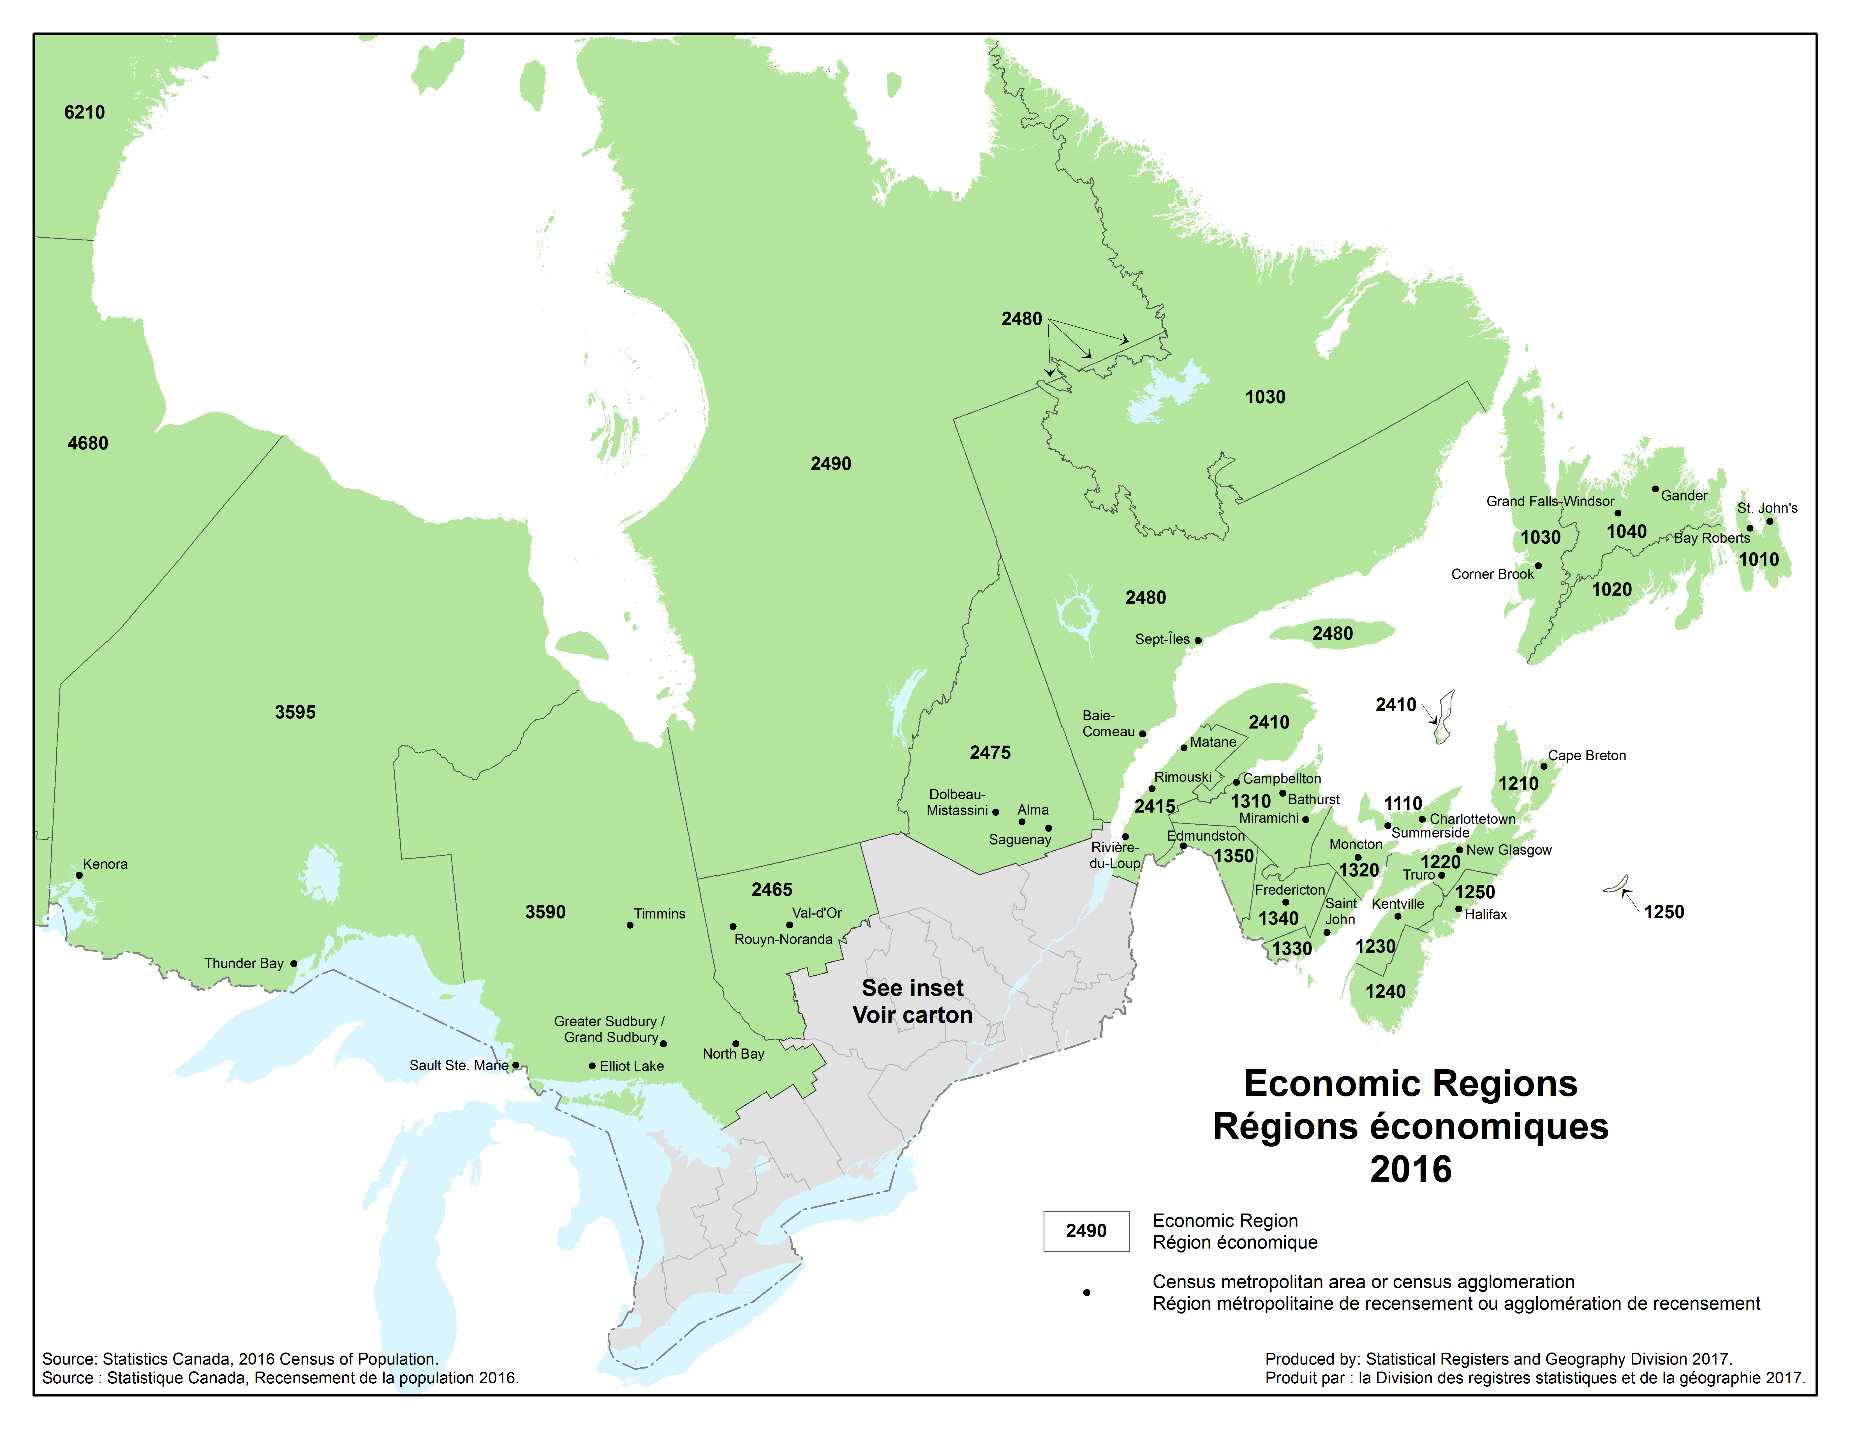 Eastern economic regions, régions économiques de l'Est - 2016